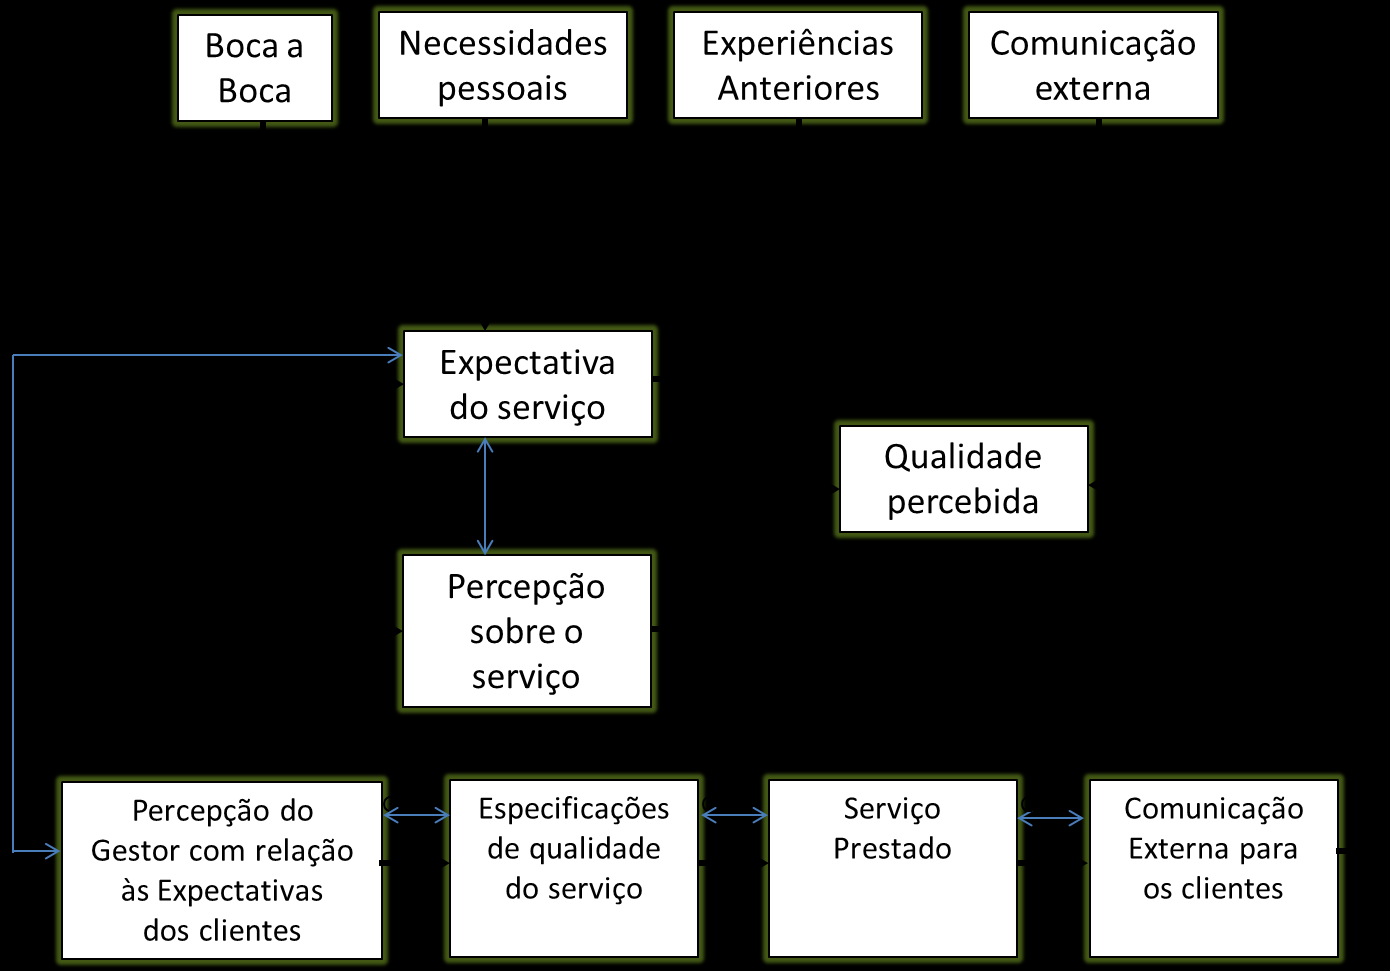 30 Figura 10 - Modelo Conceitual de Qualidade de Serviço (SERVIQUAL) Fonte: Zeithaml, Parasuraman & Berry (1990) Gap 1 É a diferença entre expectativas dos clientes sobre o serviço e a percepção dos